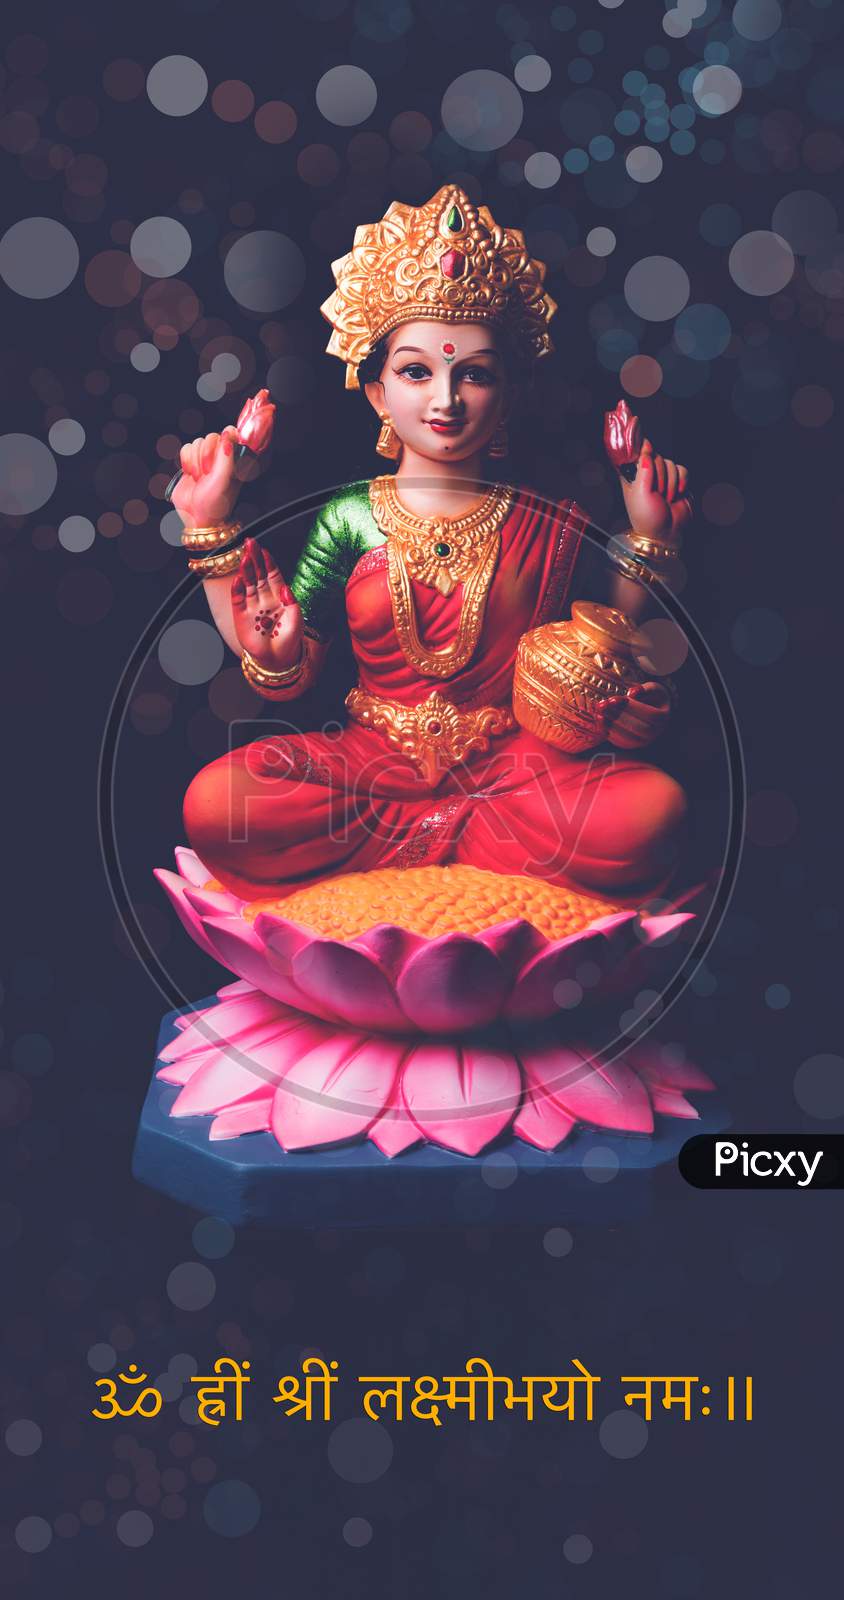 Beautiful Clay Idol of Hindu Goddess Lakshmi OR Laxmi, selective focus